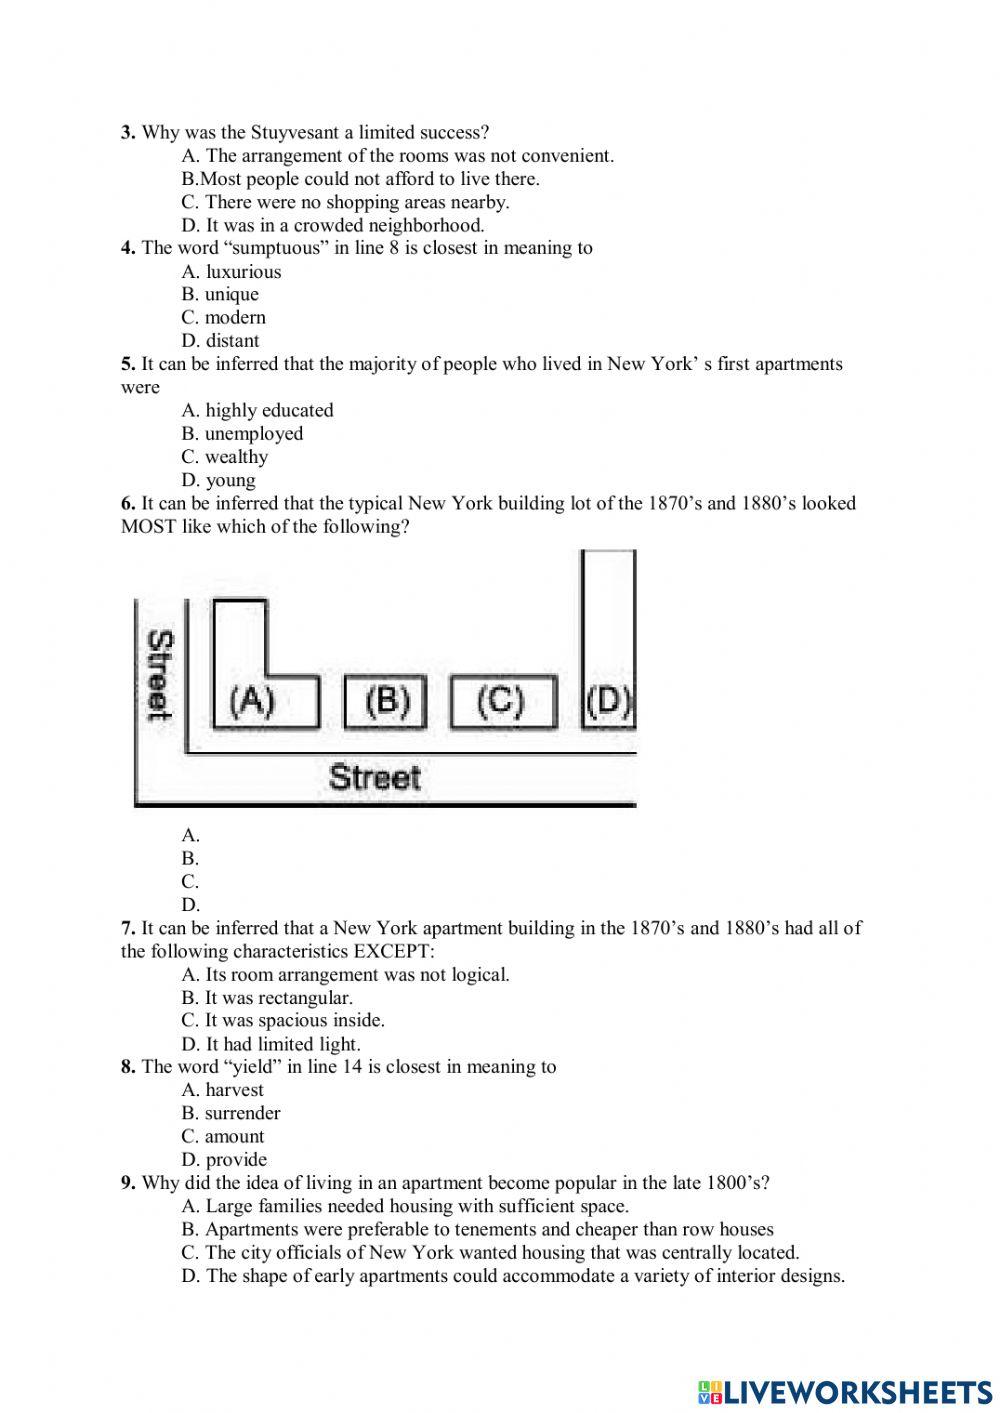 Homework VSTEP Reading Lesson 3